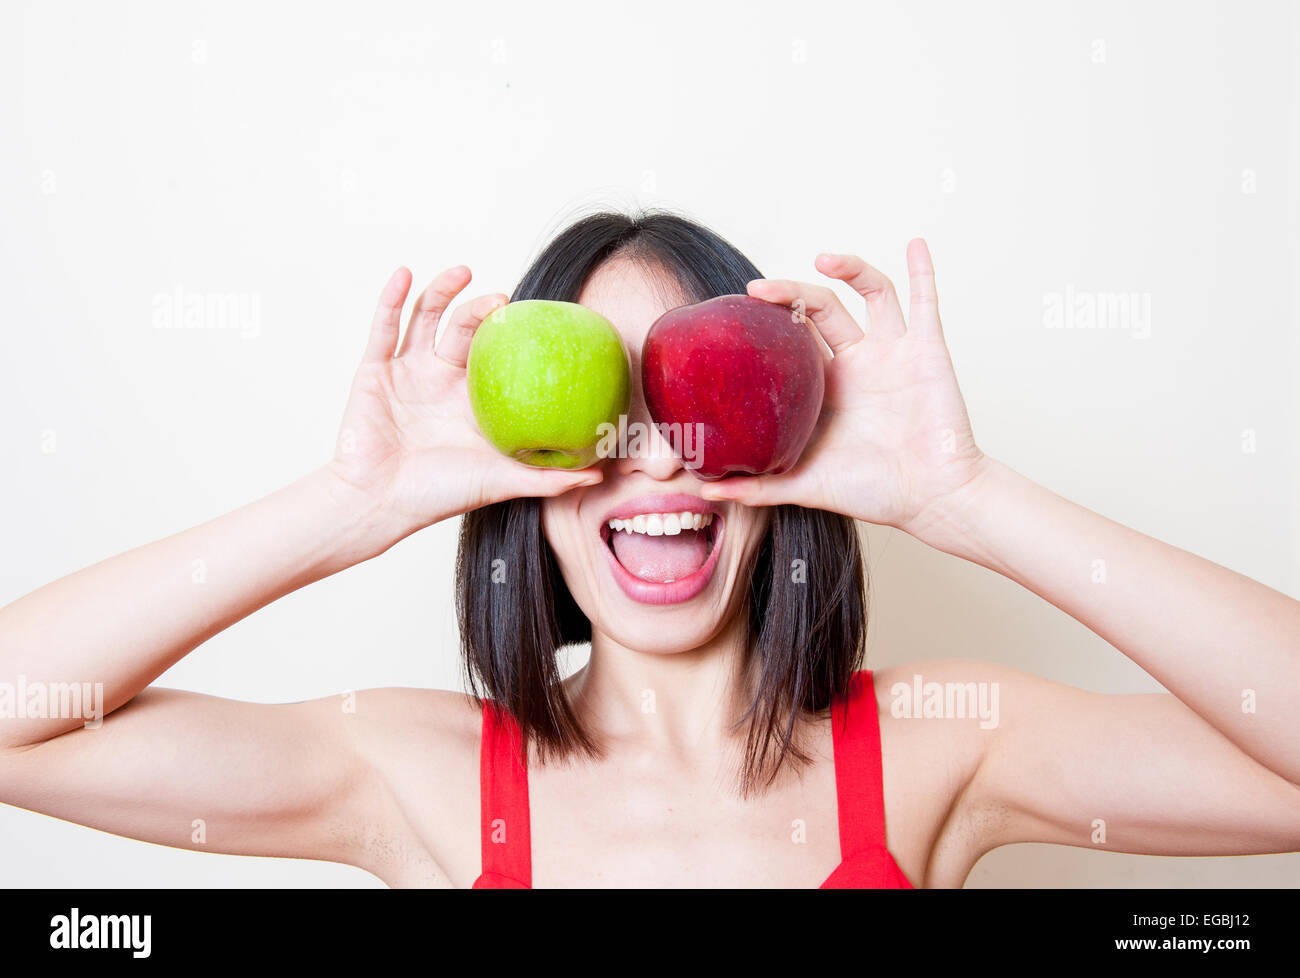 Funny giovane donna ritratto mettendo due mele rosse e verdi sui suoi occhi su sfondo bianco Foto Stock